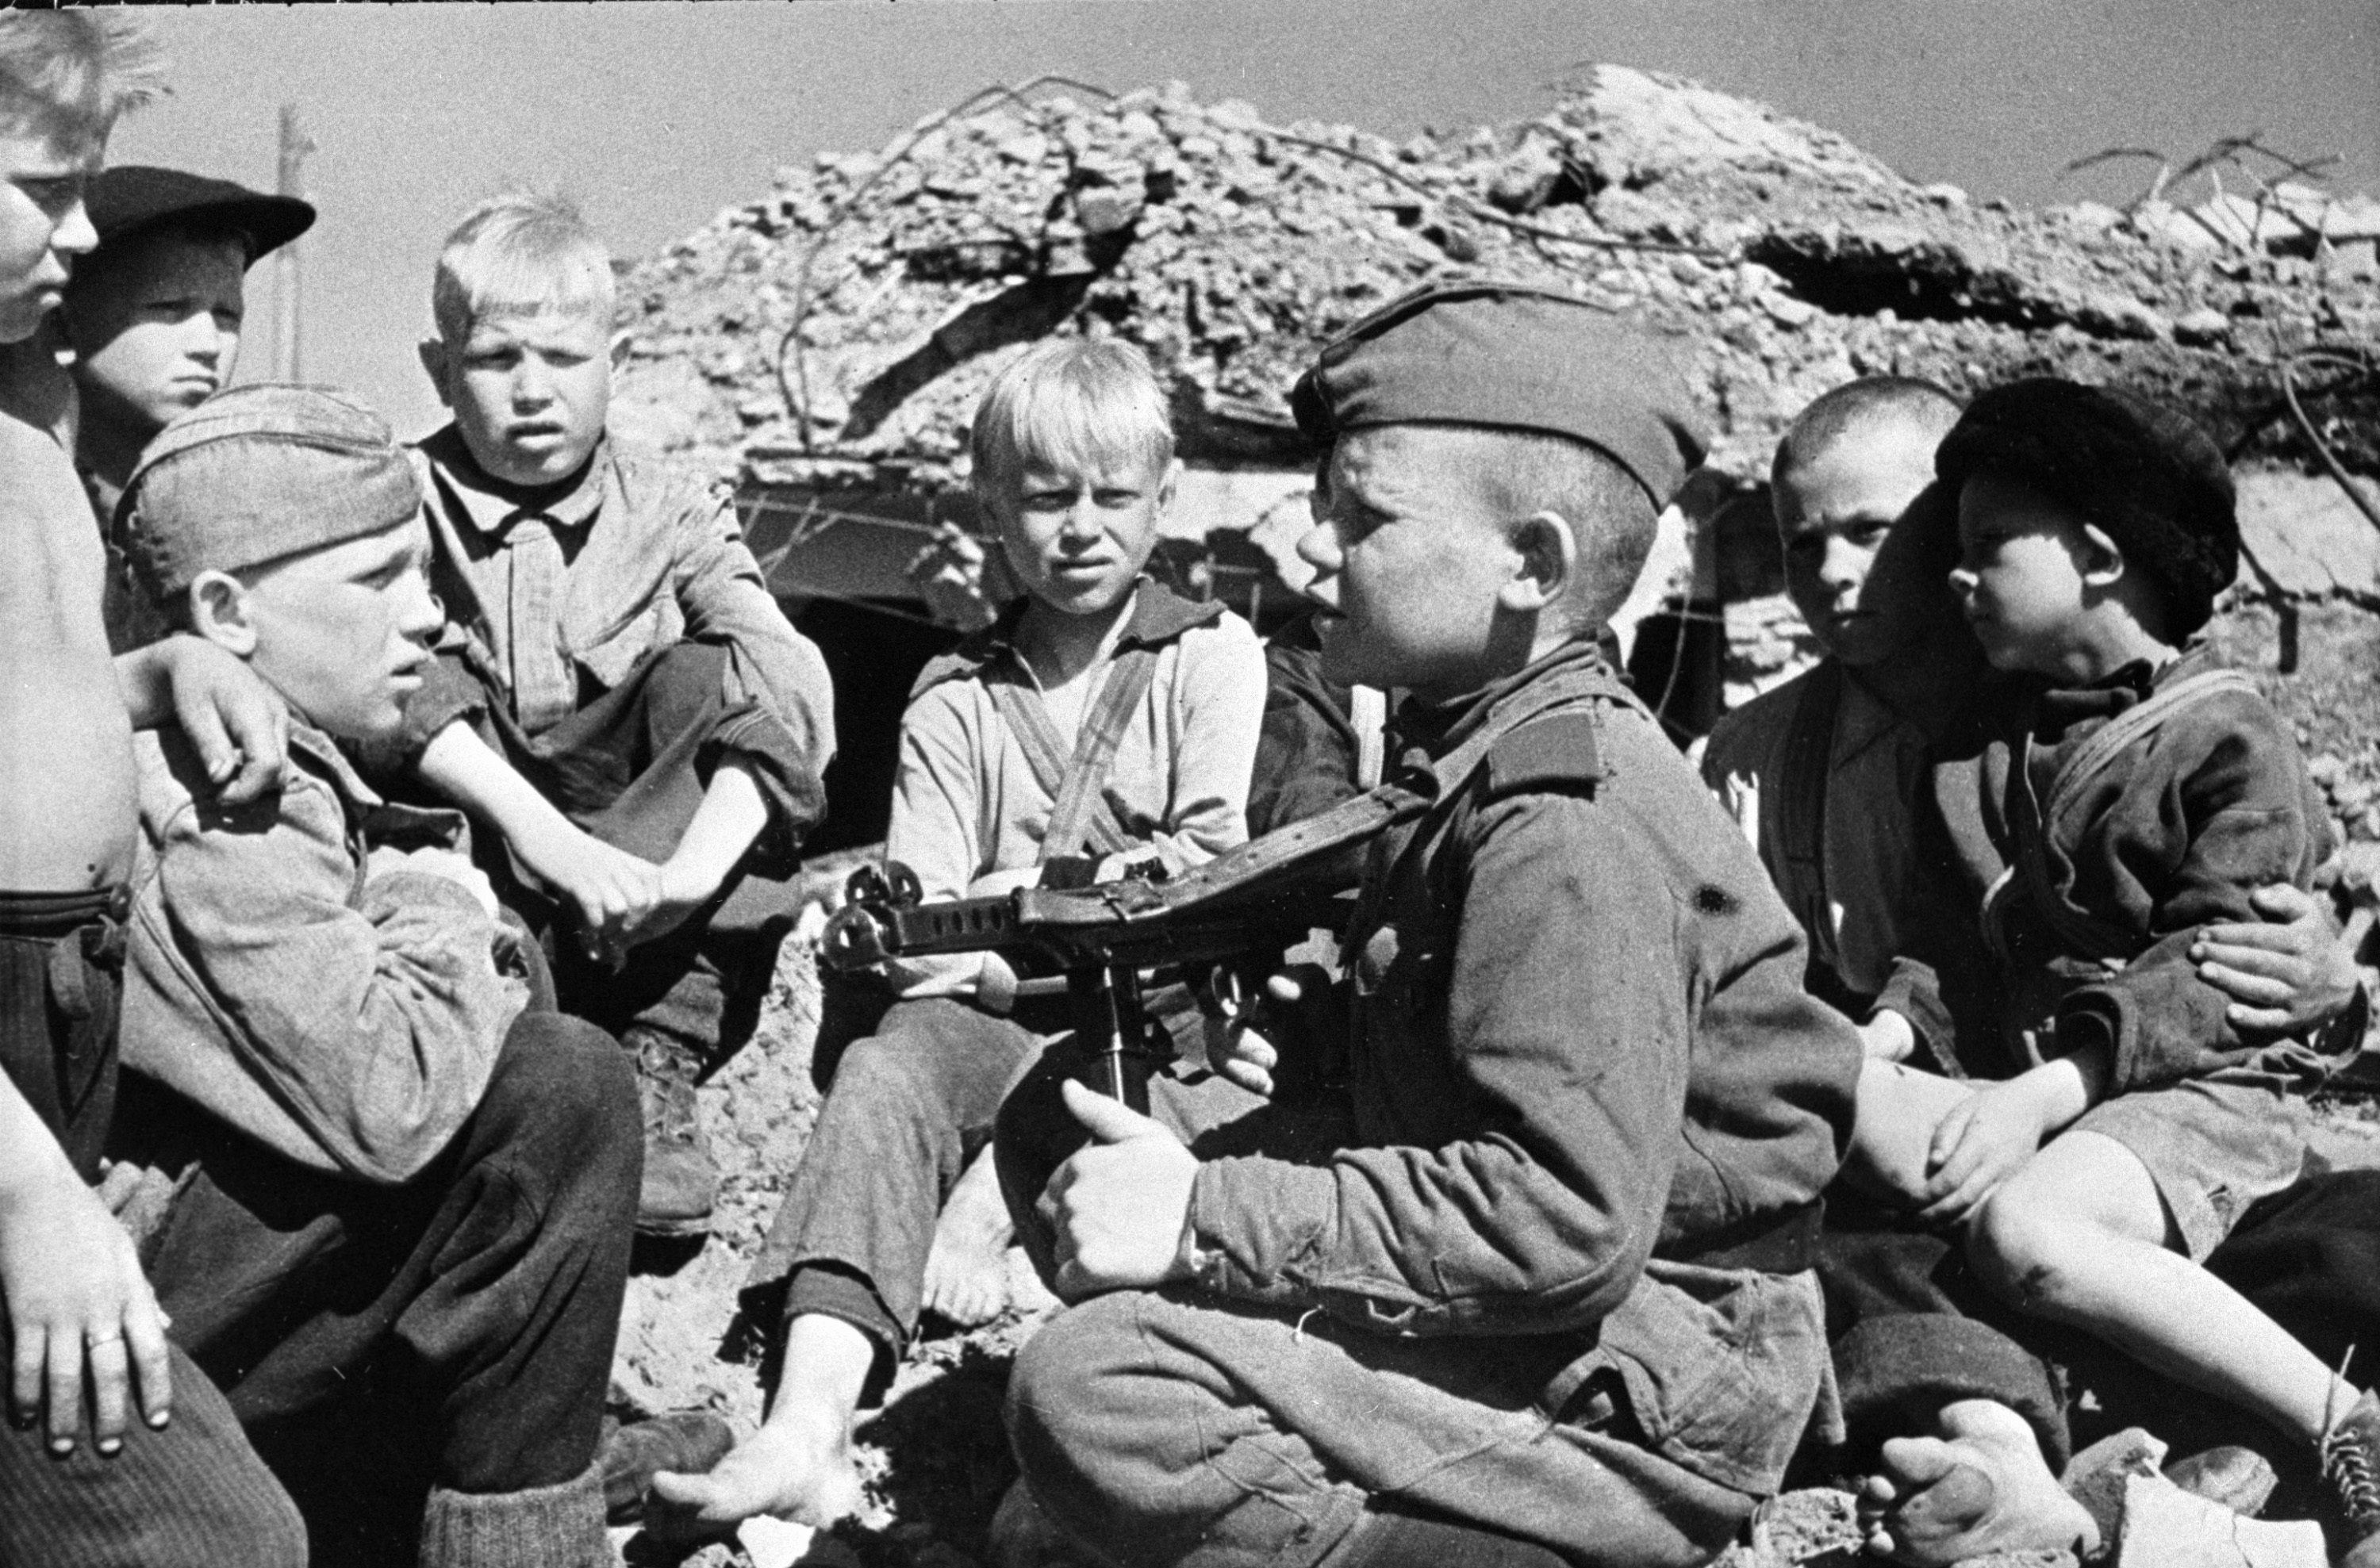 фото детей военных лет